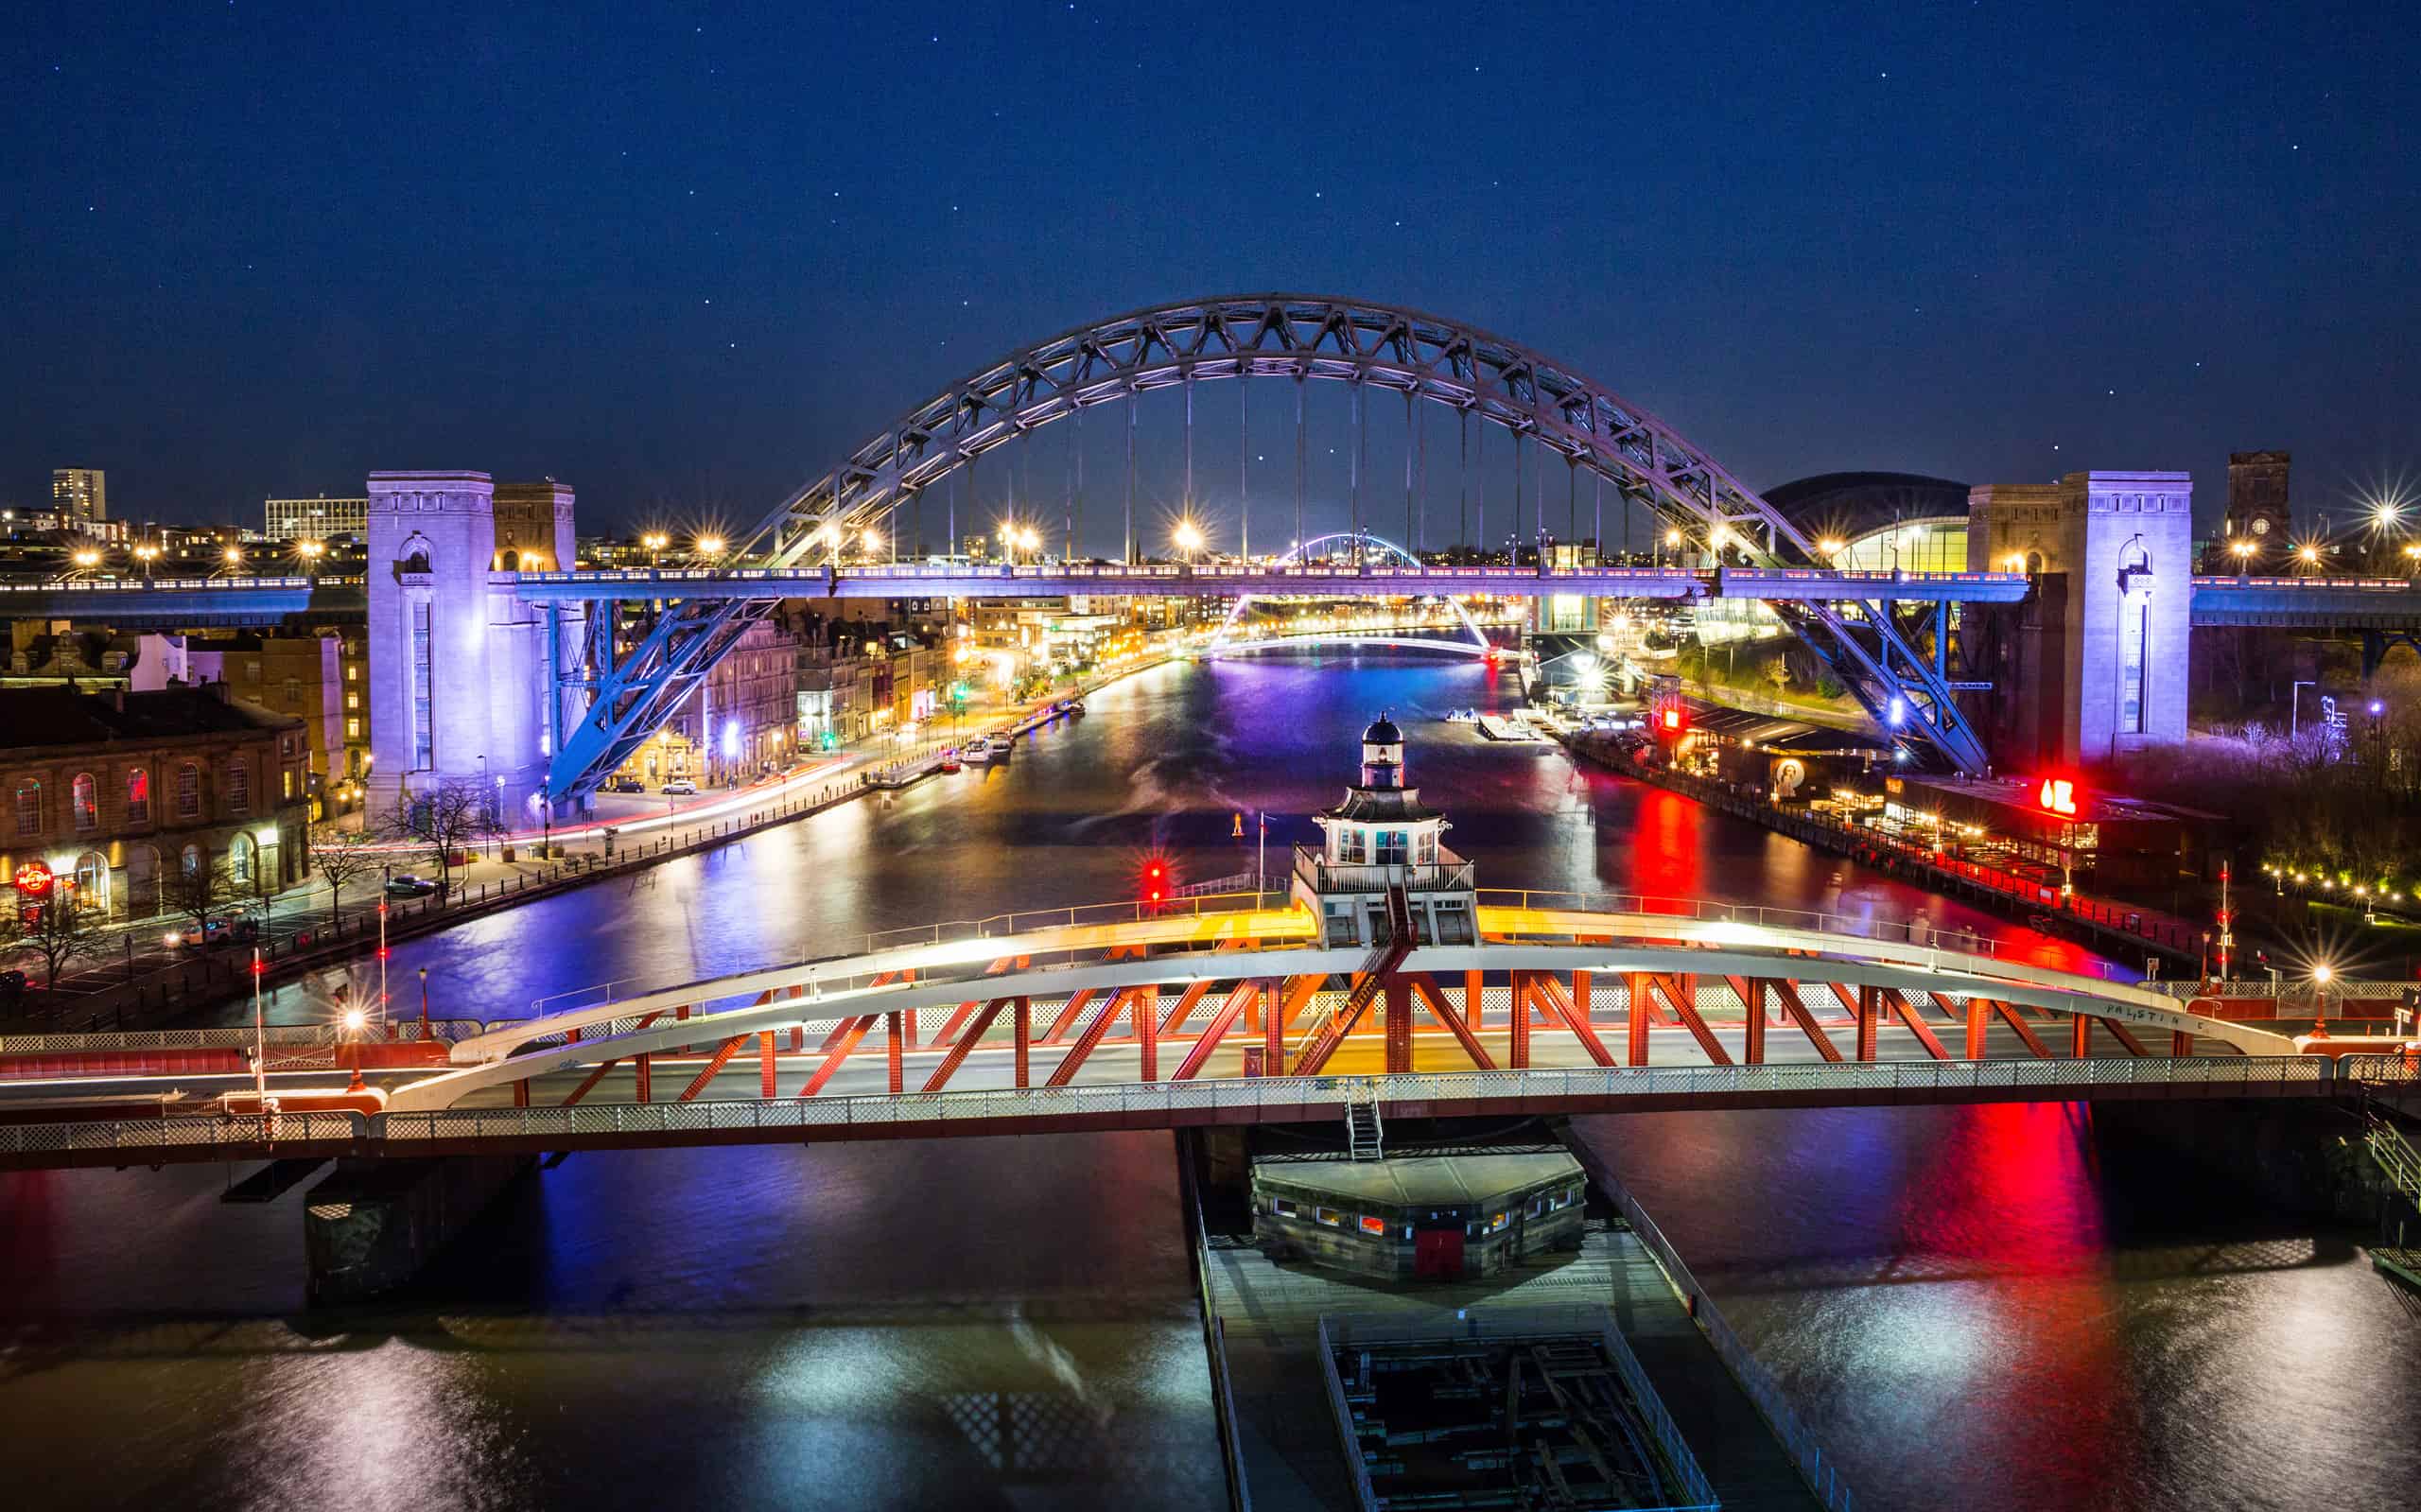 La città di Newcastle upon Tyne e Gateshead River Tyne ponti di notte, nel nord-est dell'Inghilterra.